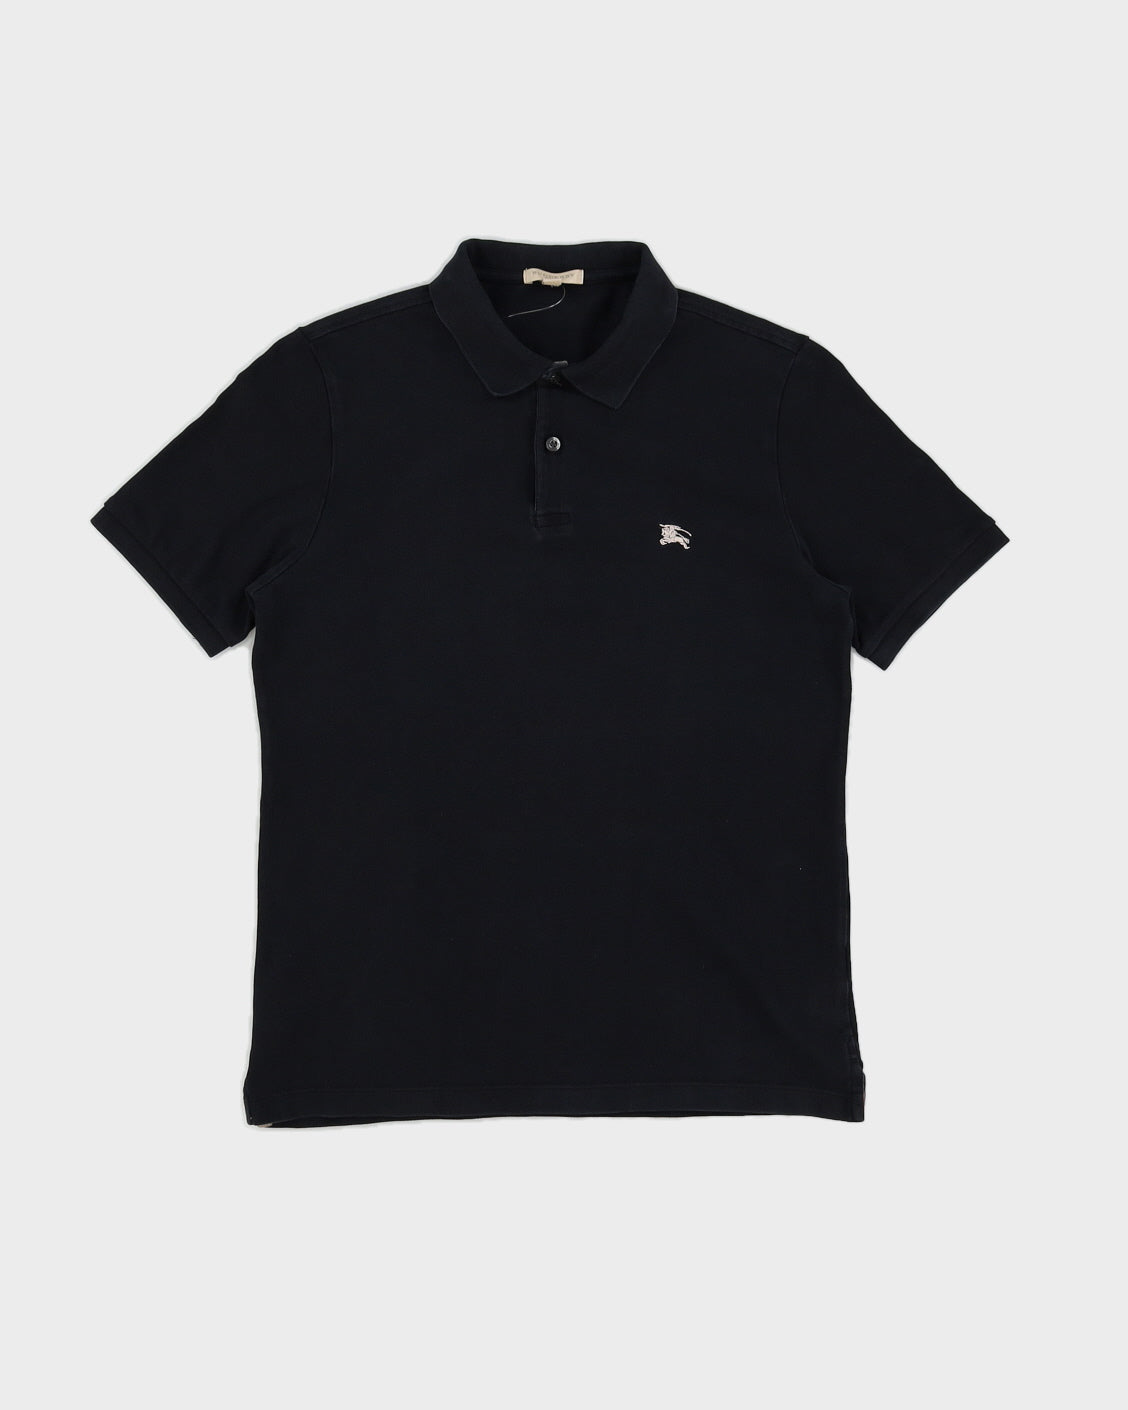 Black Burberry Polo Shirt - M